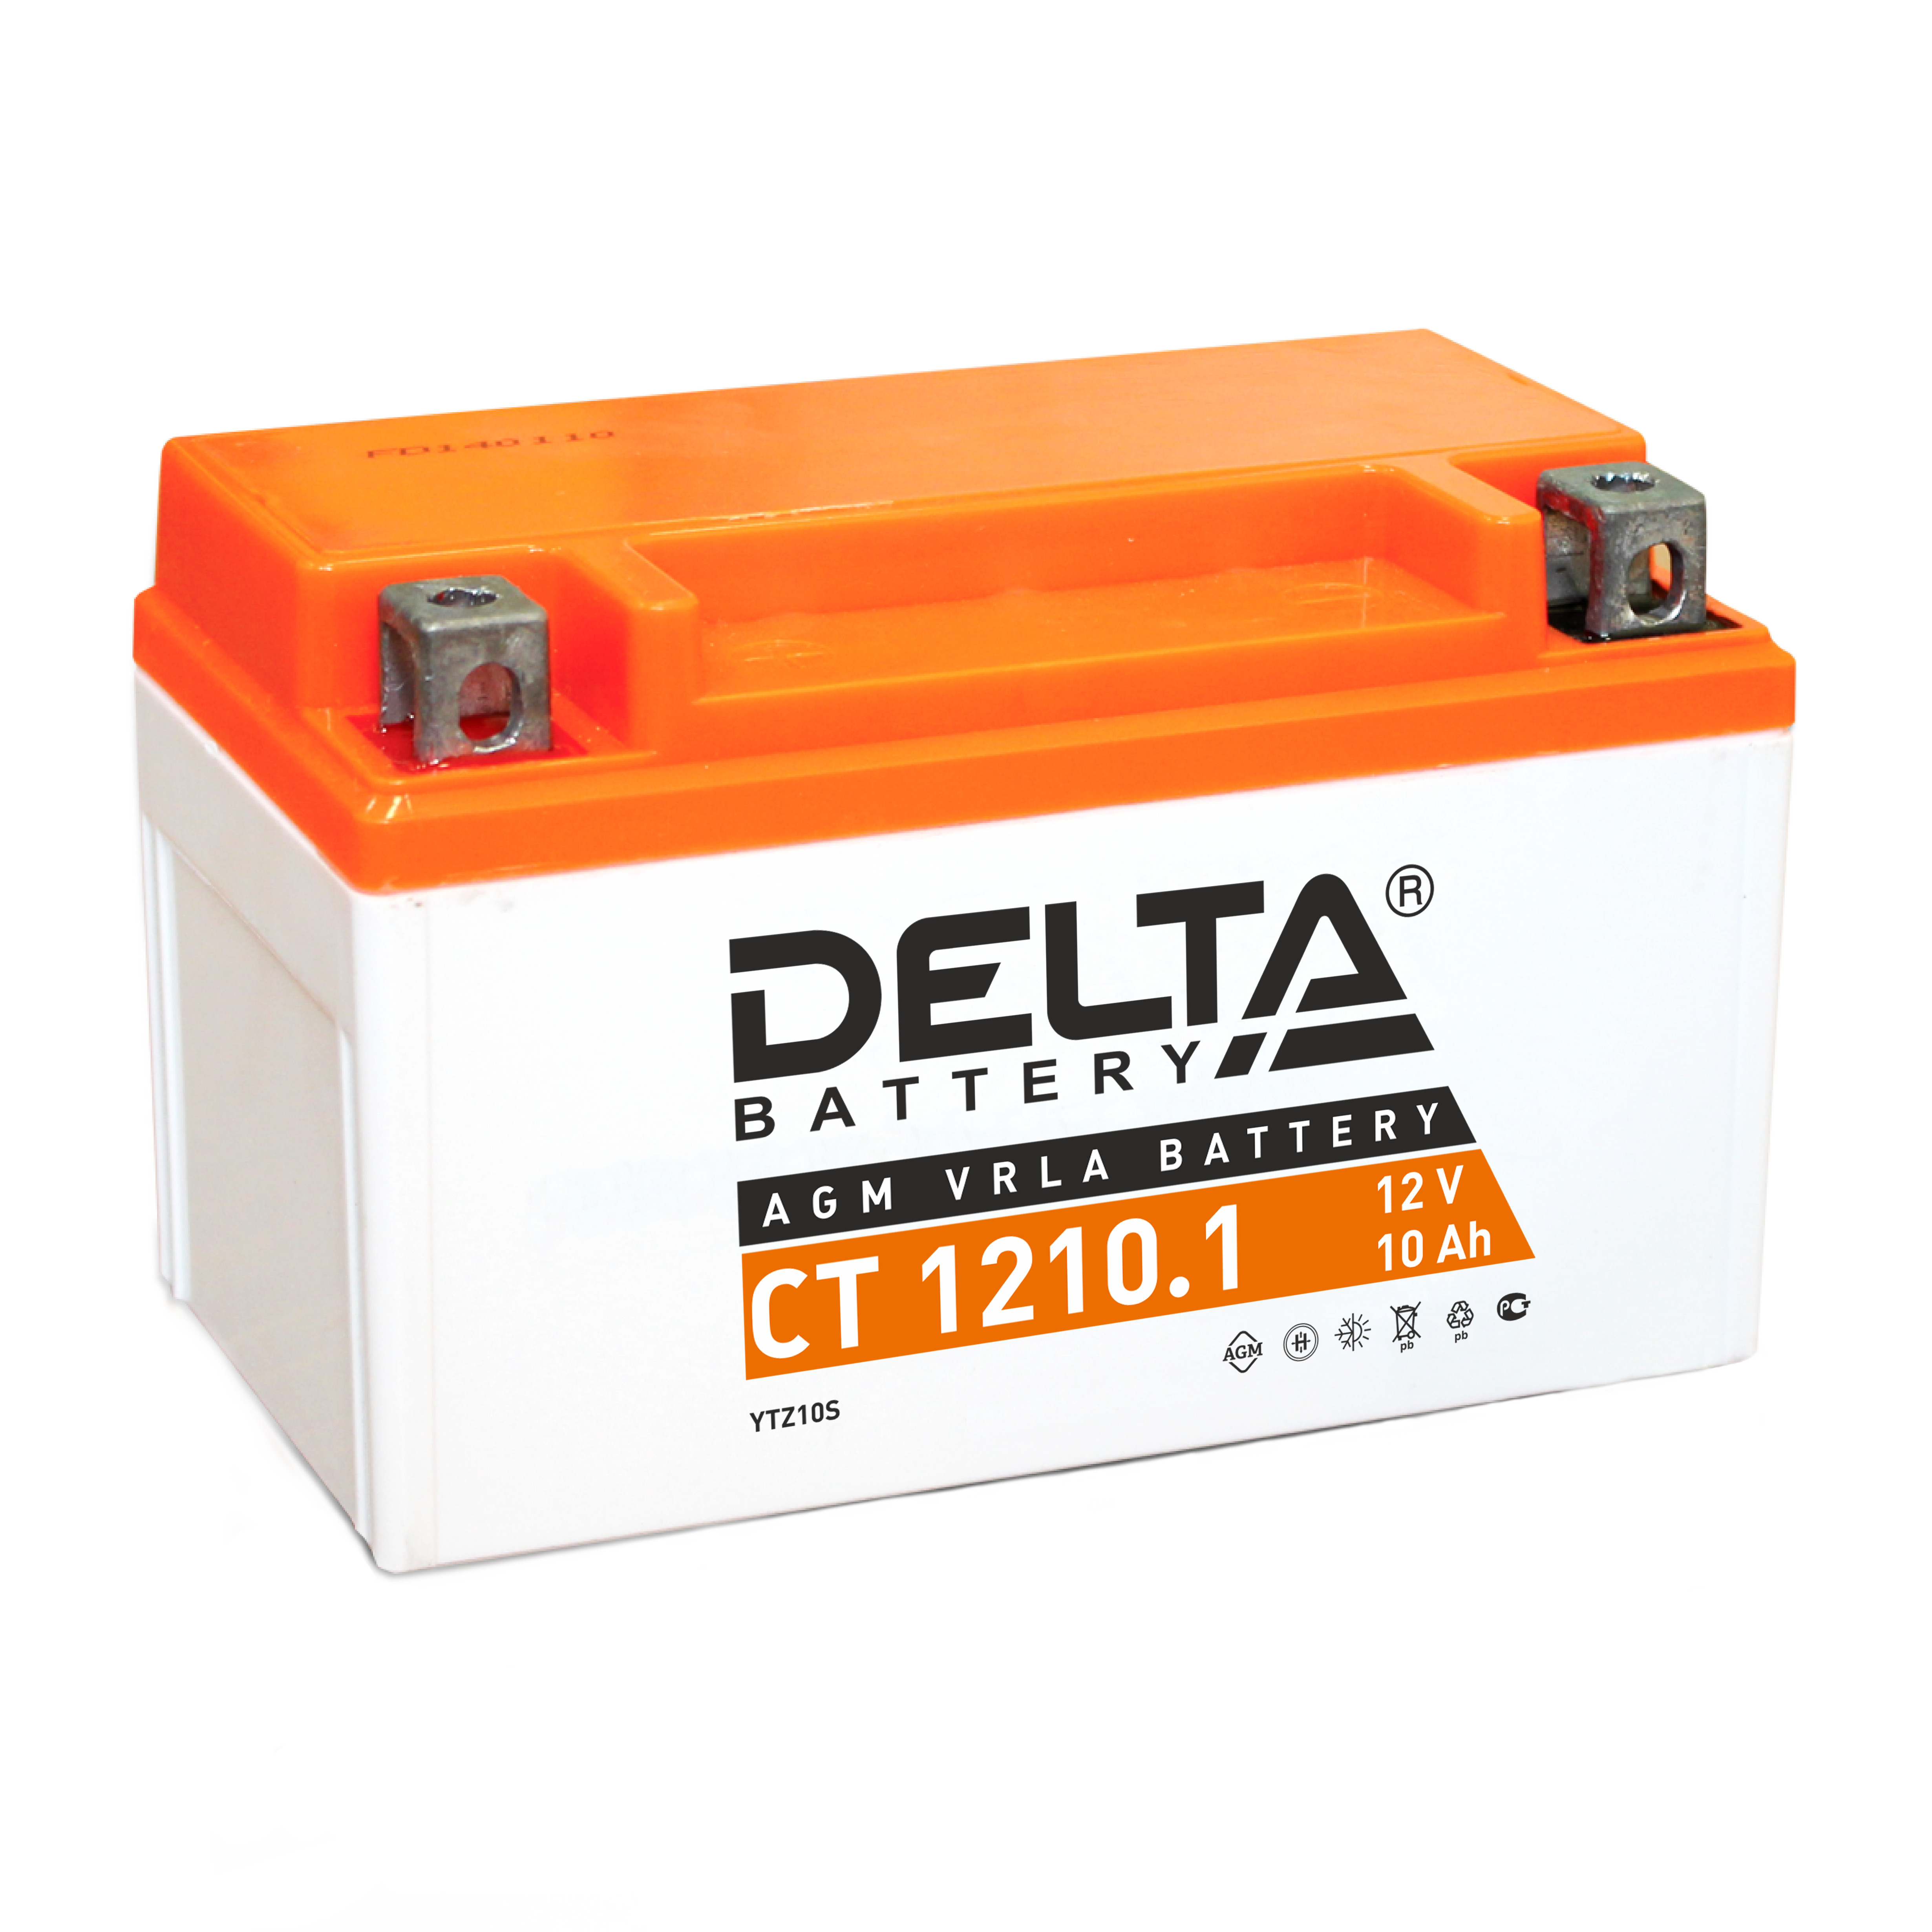 Мото аккумулятор Delta CT 1210.1: 12В, 10Ач. Стартовый ток 190А.